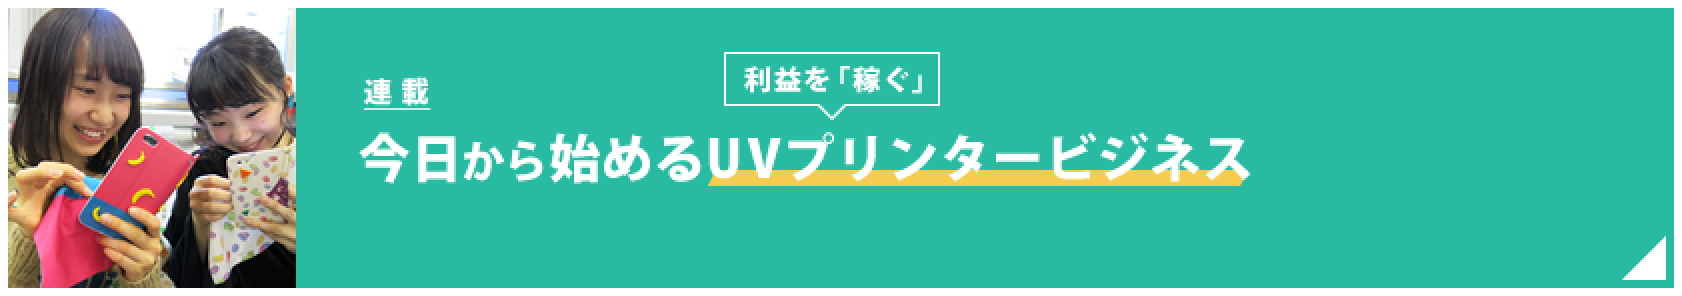 【予告編】今日から始めるUVプリンタービジネス